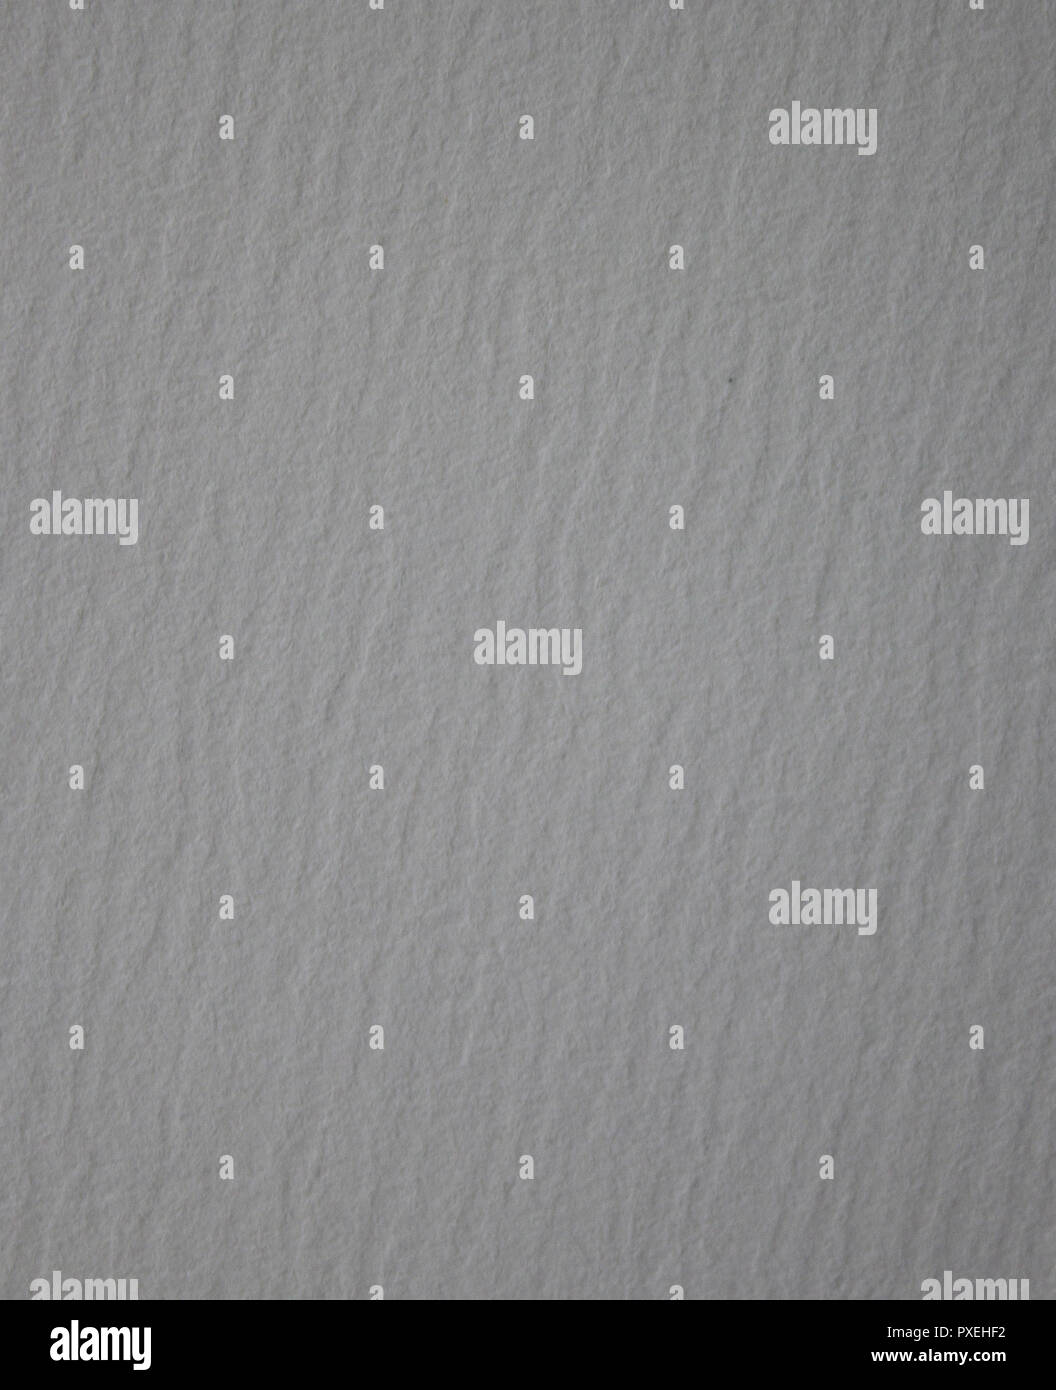 Silver glitter dust Fotos und Bildmaterial in hoher Aufl 246 sung Alamy